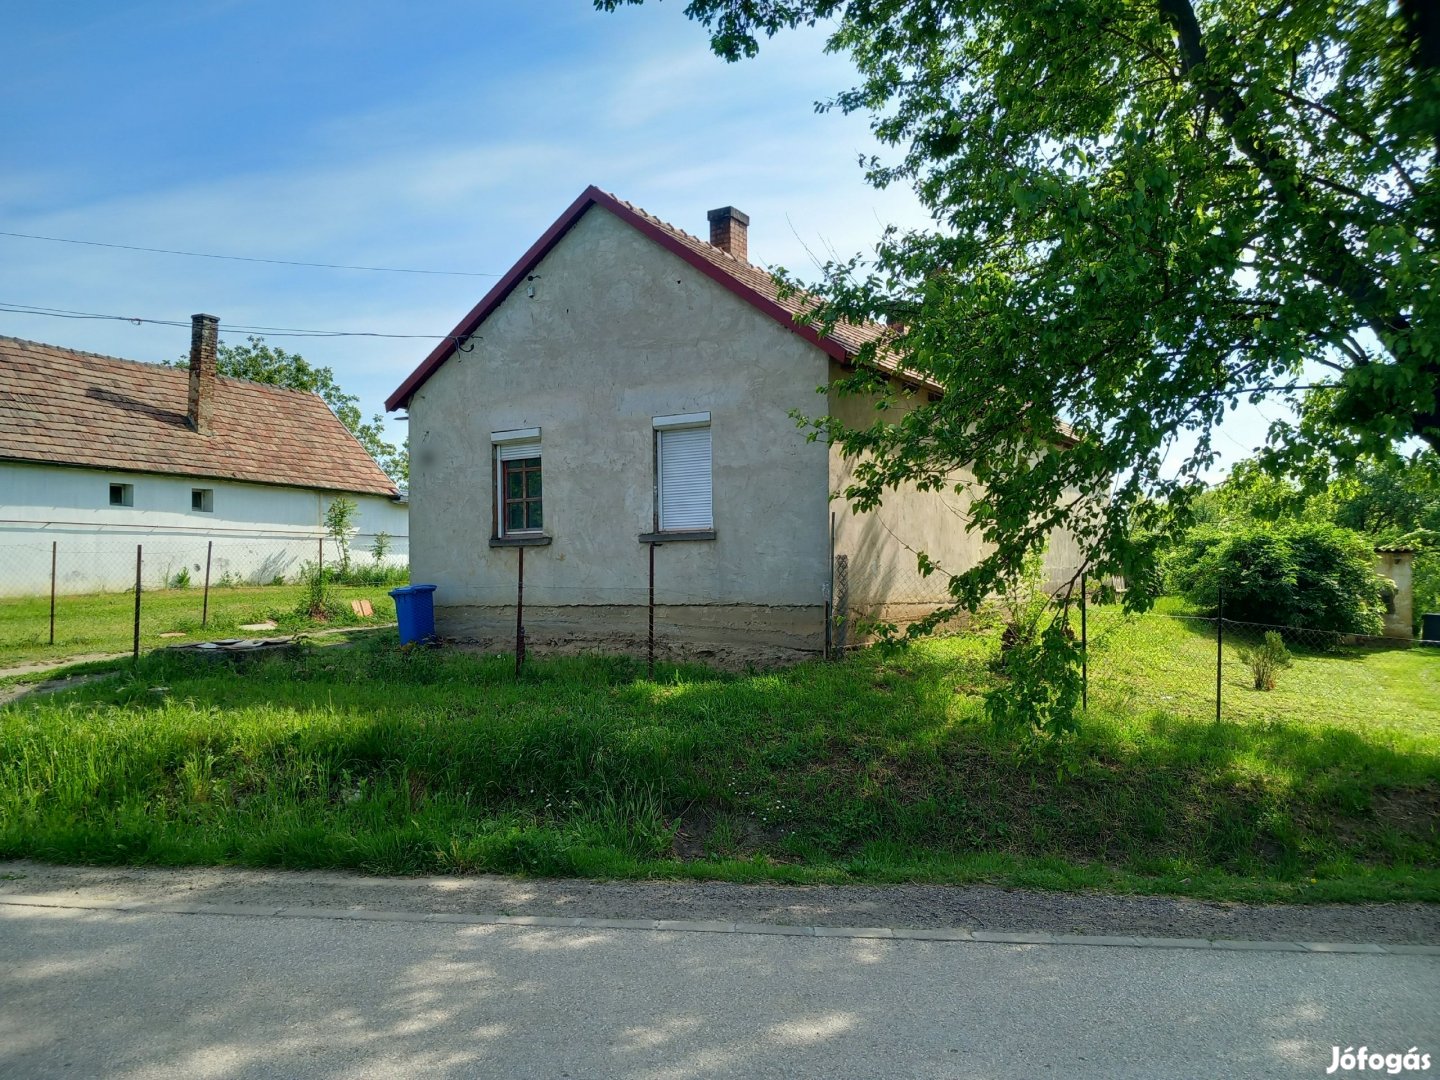 Eladó családi ház Kisbér belterületen a vasútállomás közelében